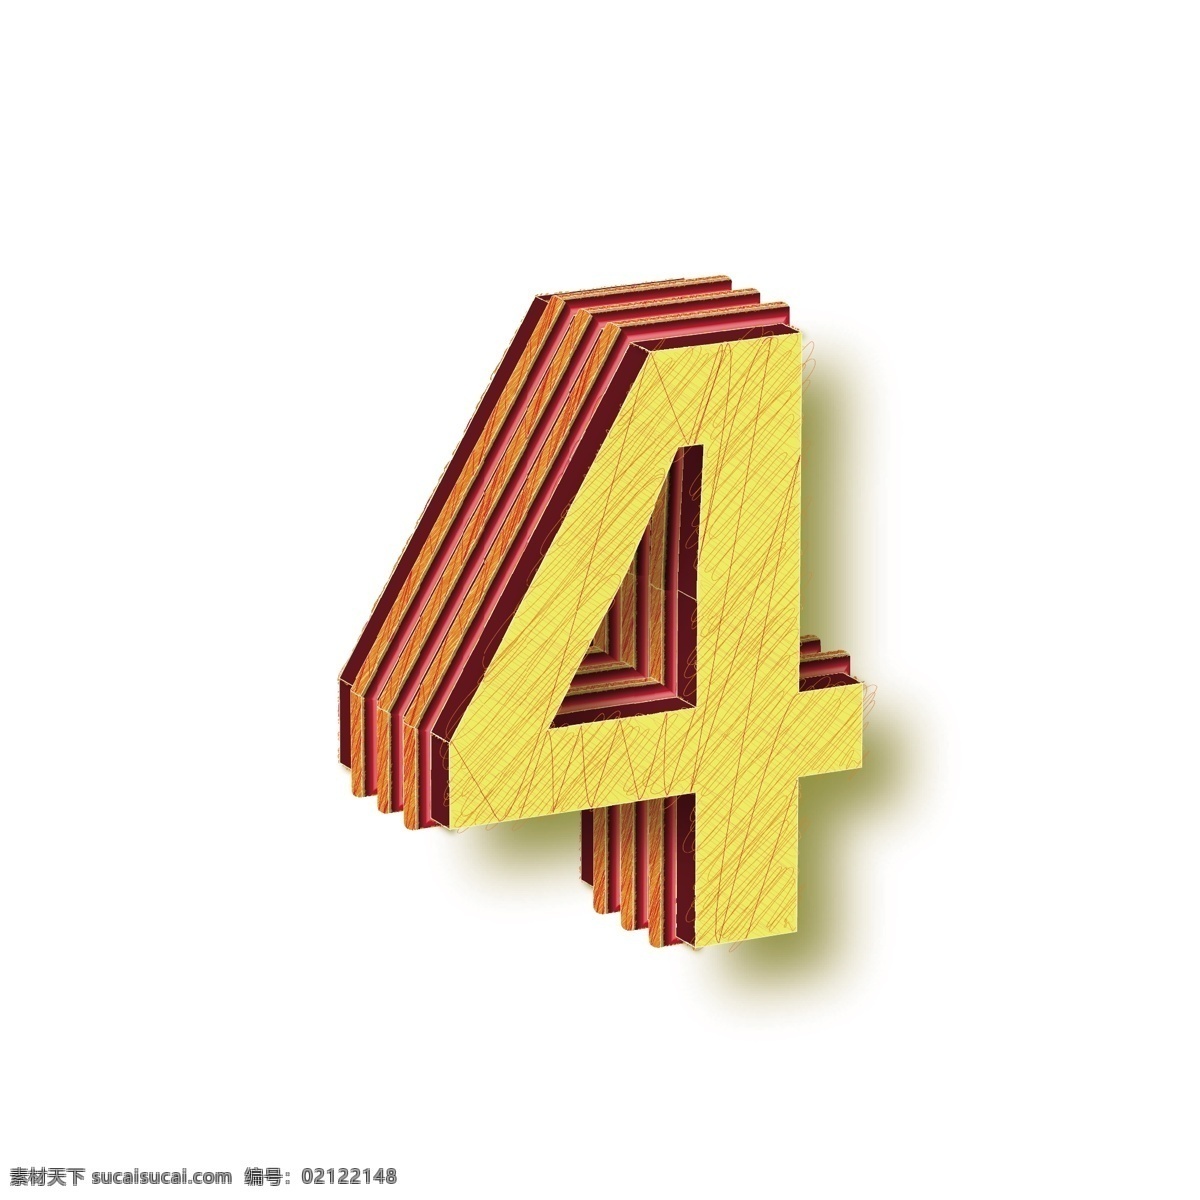 矢量 3d 数字 艺术 字 元素 数字4 矢量数字4 黄色 数字艺术字 3d艺术字 3d数字 矢量元素 设计元素 元素设计 字体设计 艺术字 矢量数字